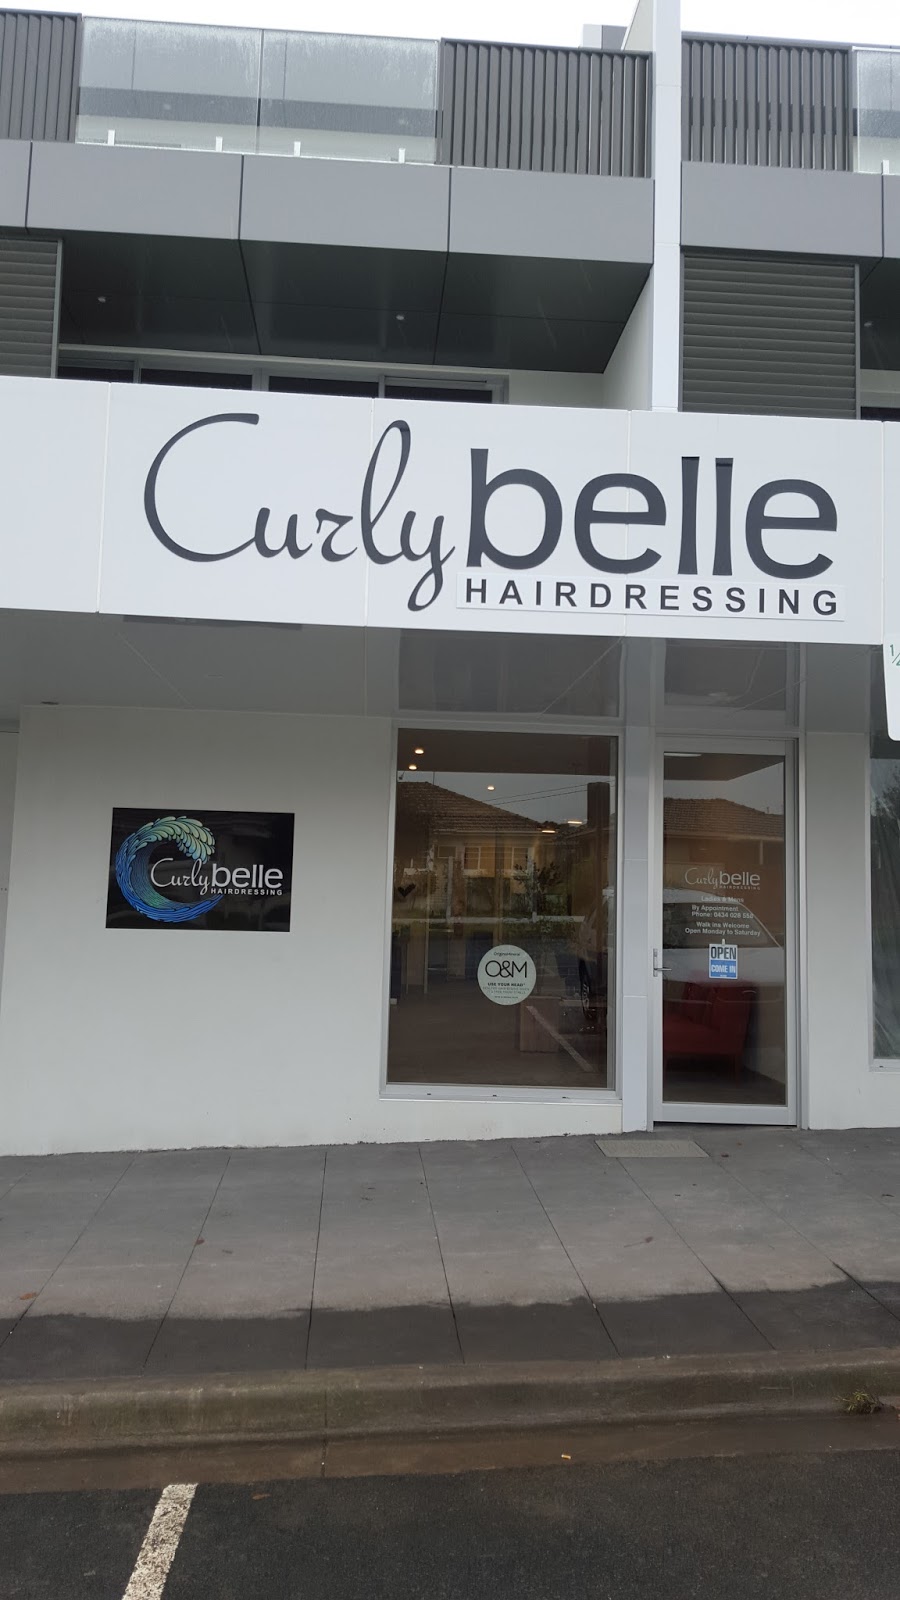 Curly Belle Hairdressing | hair care | 1/93 Cavanagh St, Cheltenham VIC 3192, Australia | 0434028558 OR +61 434 028 558